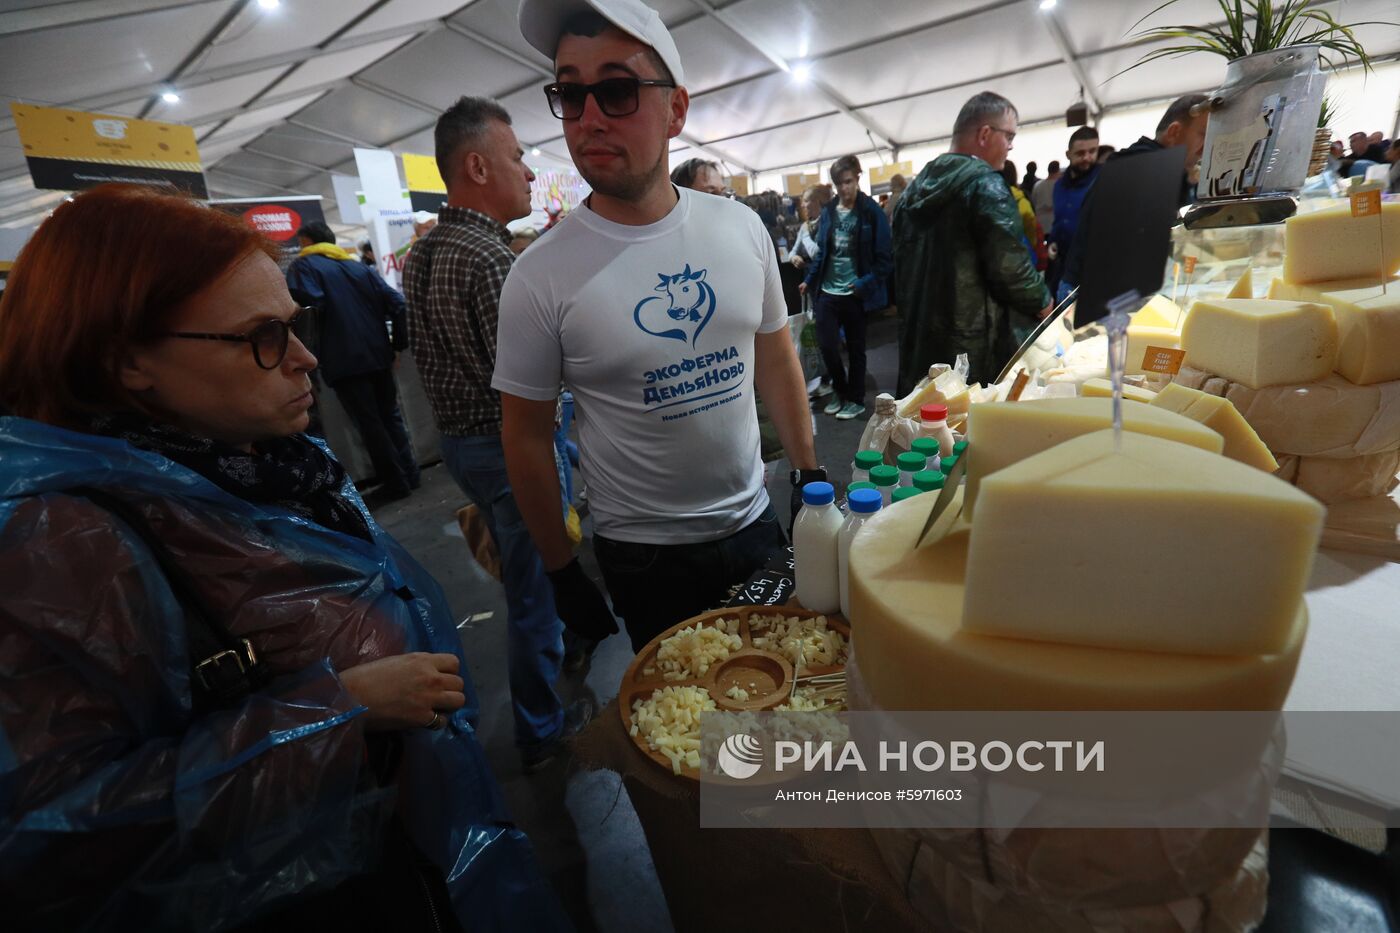 Всероссийский фестиваль фермерской продукции "Сыр. Пир. Мир" 